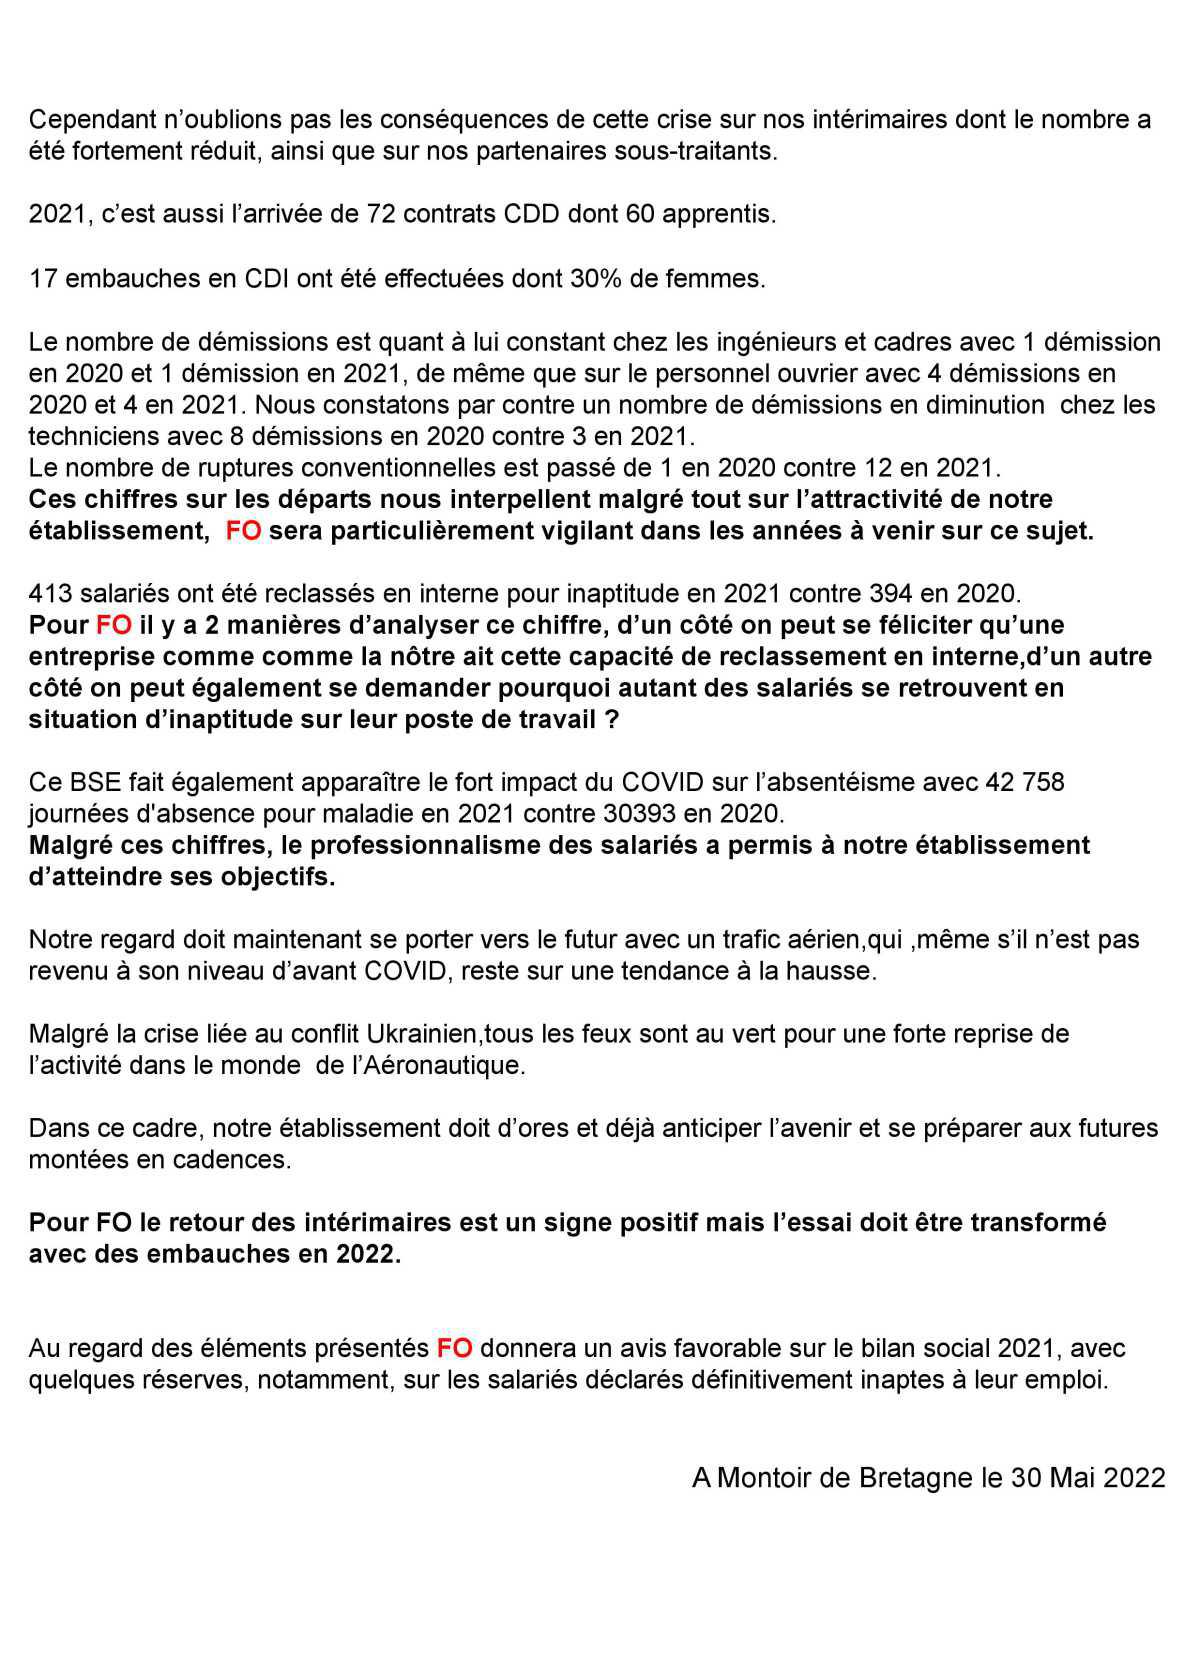 Déclaration FO au CSE-E du 30 mai 2022 sur le bilan social 2021